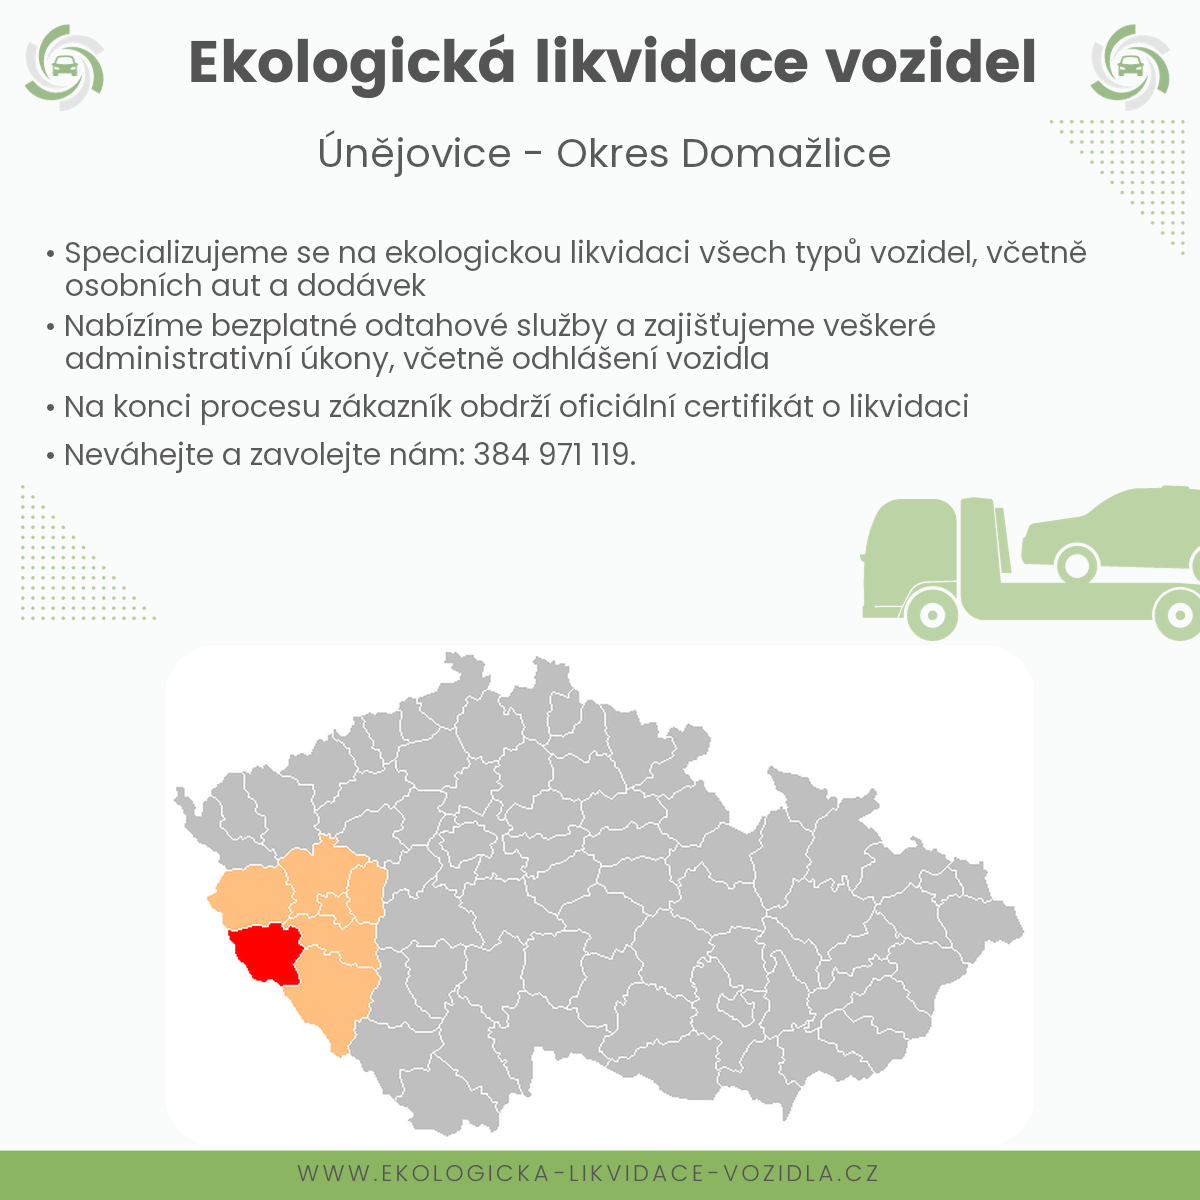 likvidace vozidel - Únějovice